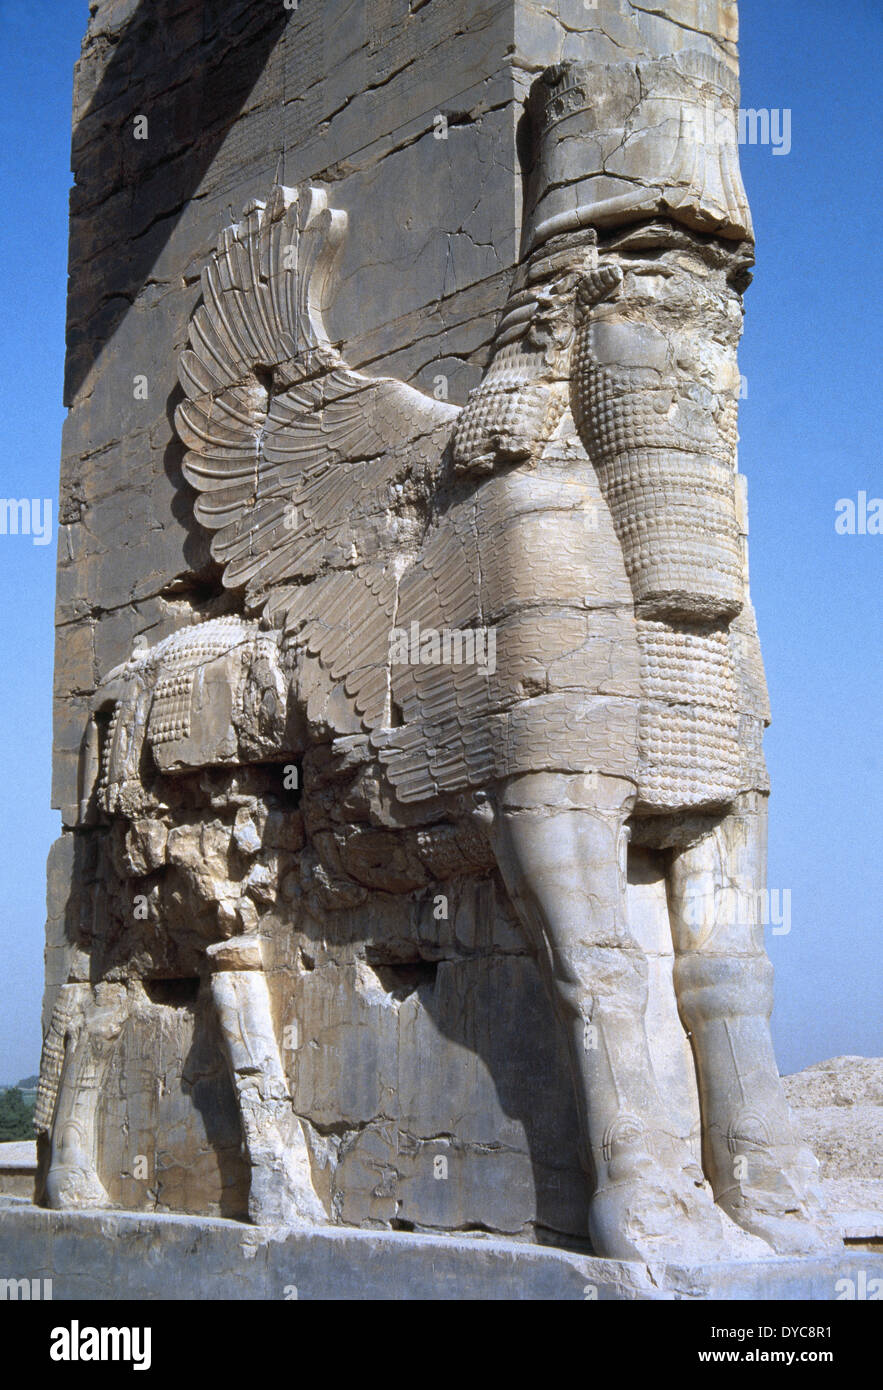 L'Iran. Persepolis. La porte de toutes les nations ou Xerxus Gateway. Lamassu. L'Assyrien divinité protectrice. Le corps de Bull et des droits de la tête. Banque D'Images